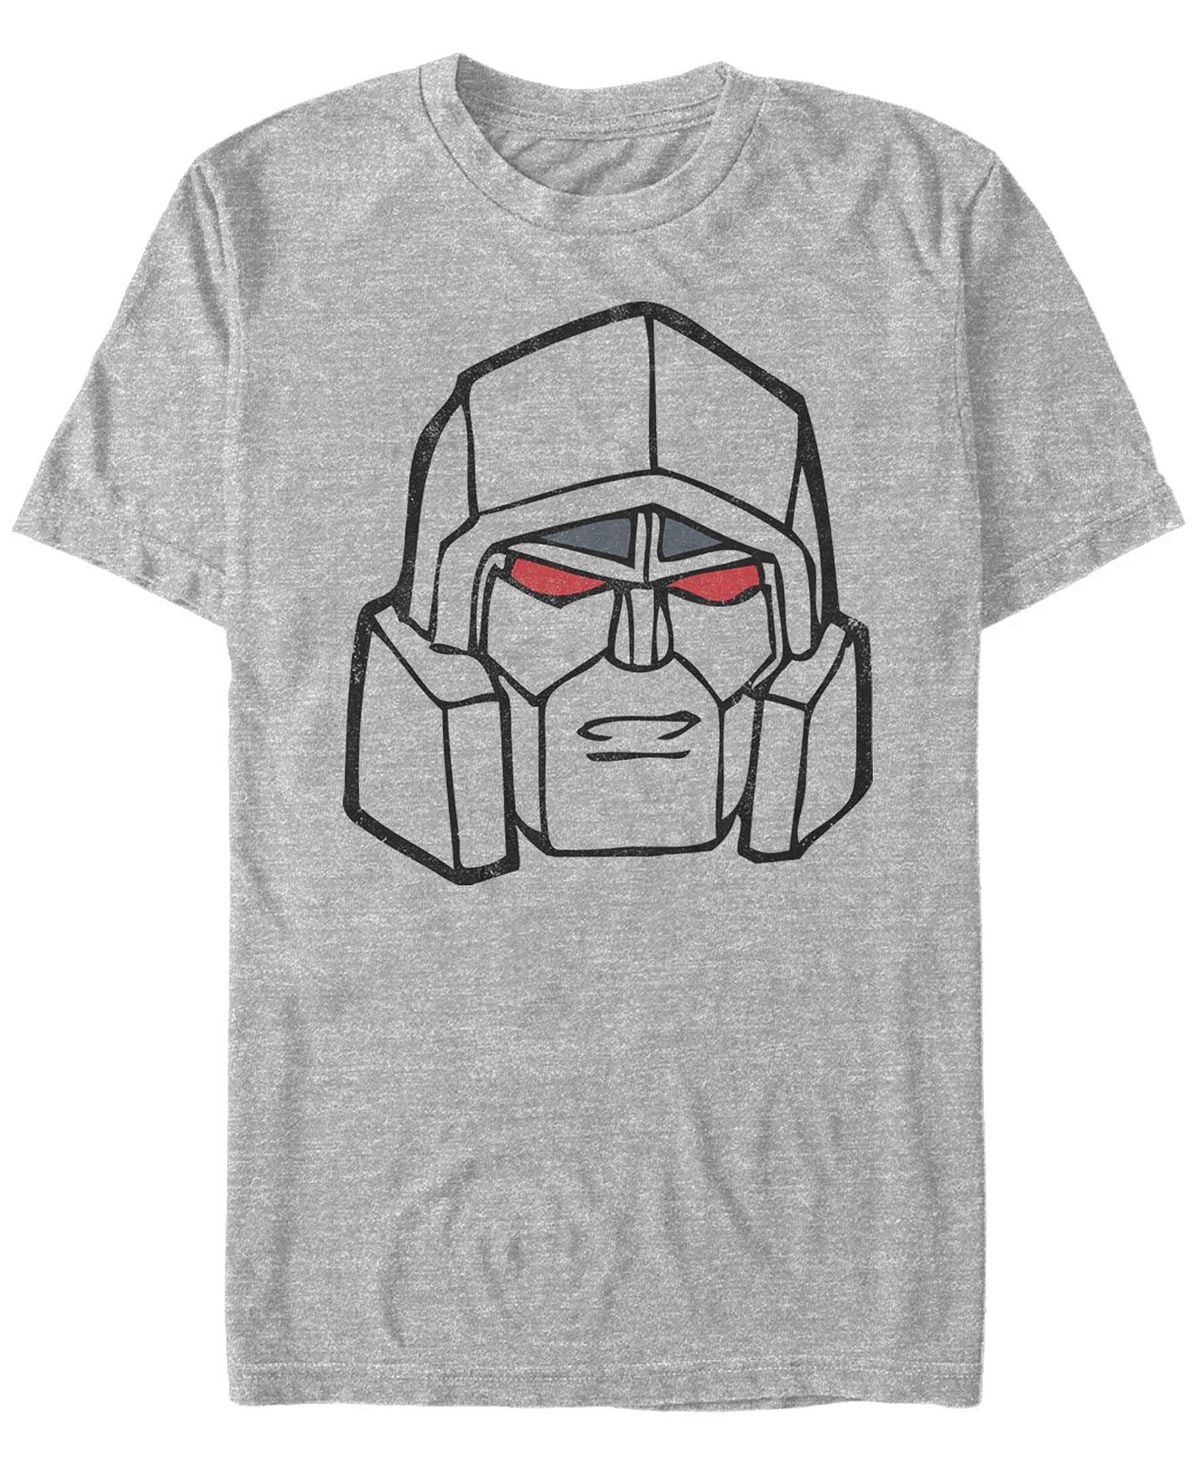 Мужская футболка Megatron Face с короткими рукавами и круглым вырезом Fifth Sun трансформеры автоботы вперед